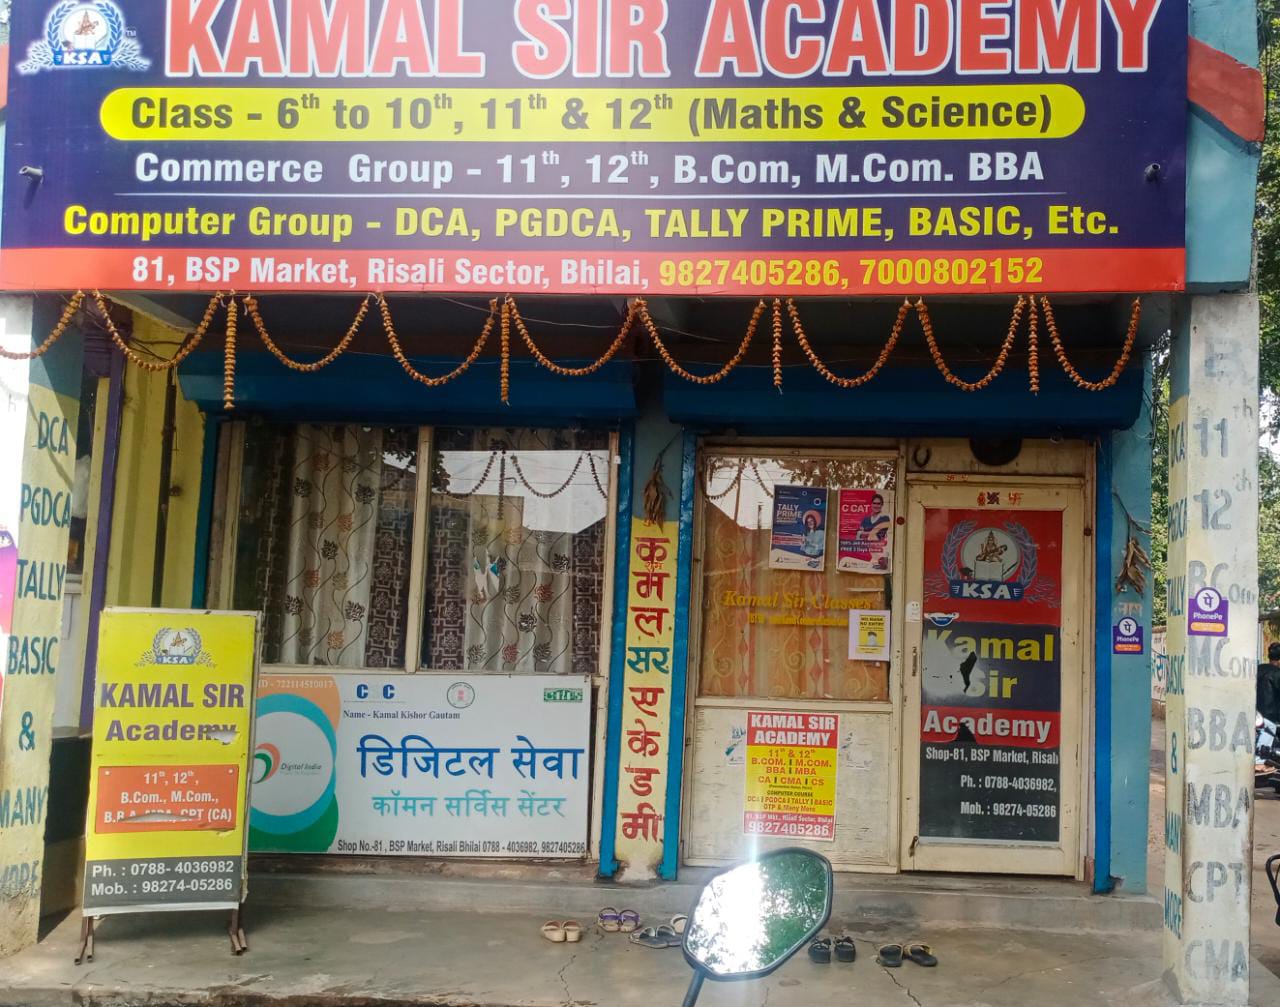 Kamal Sir Academy